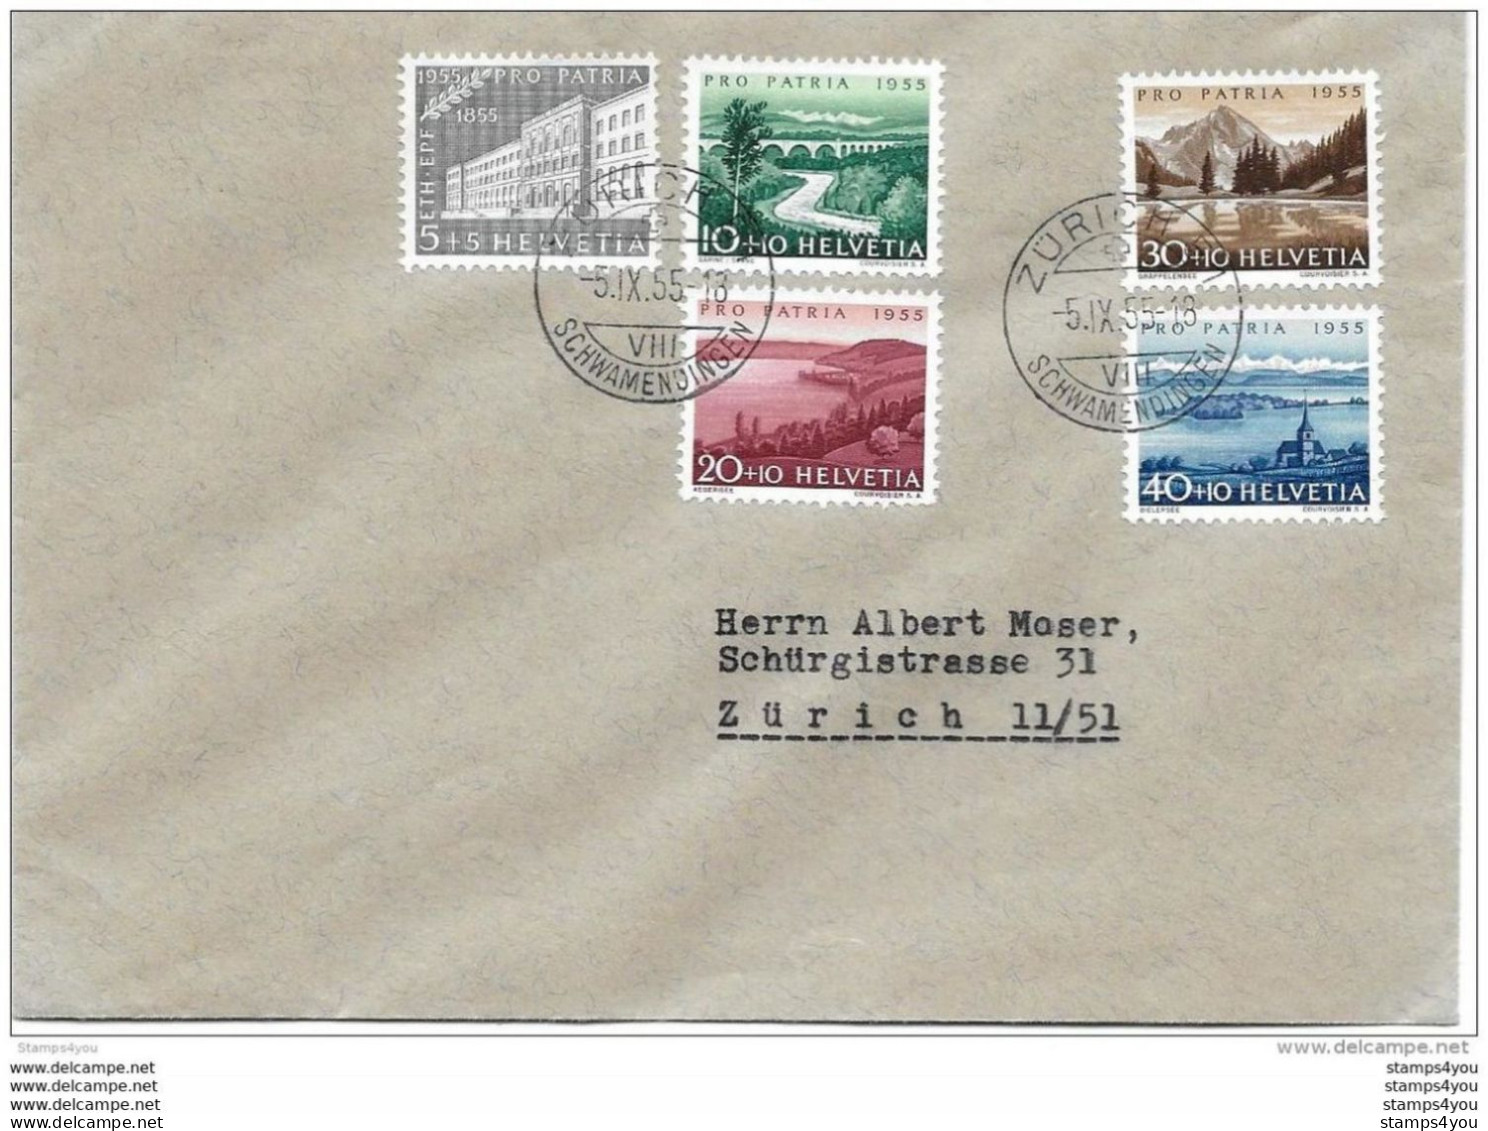 79 - 52 - Enveloppe  Avec Série Pro Patria 1955 - Cachets à Date Zürich Schwamendingen - Lettres & Documents